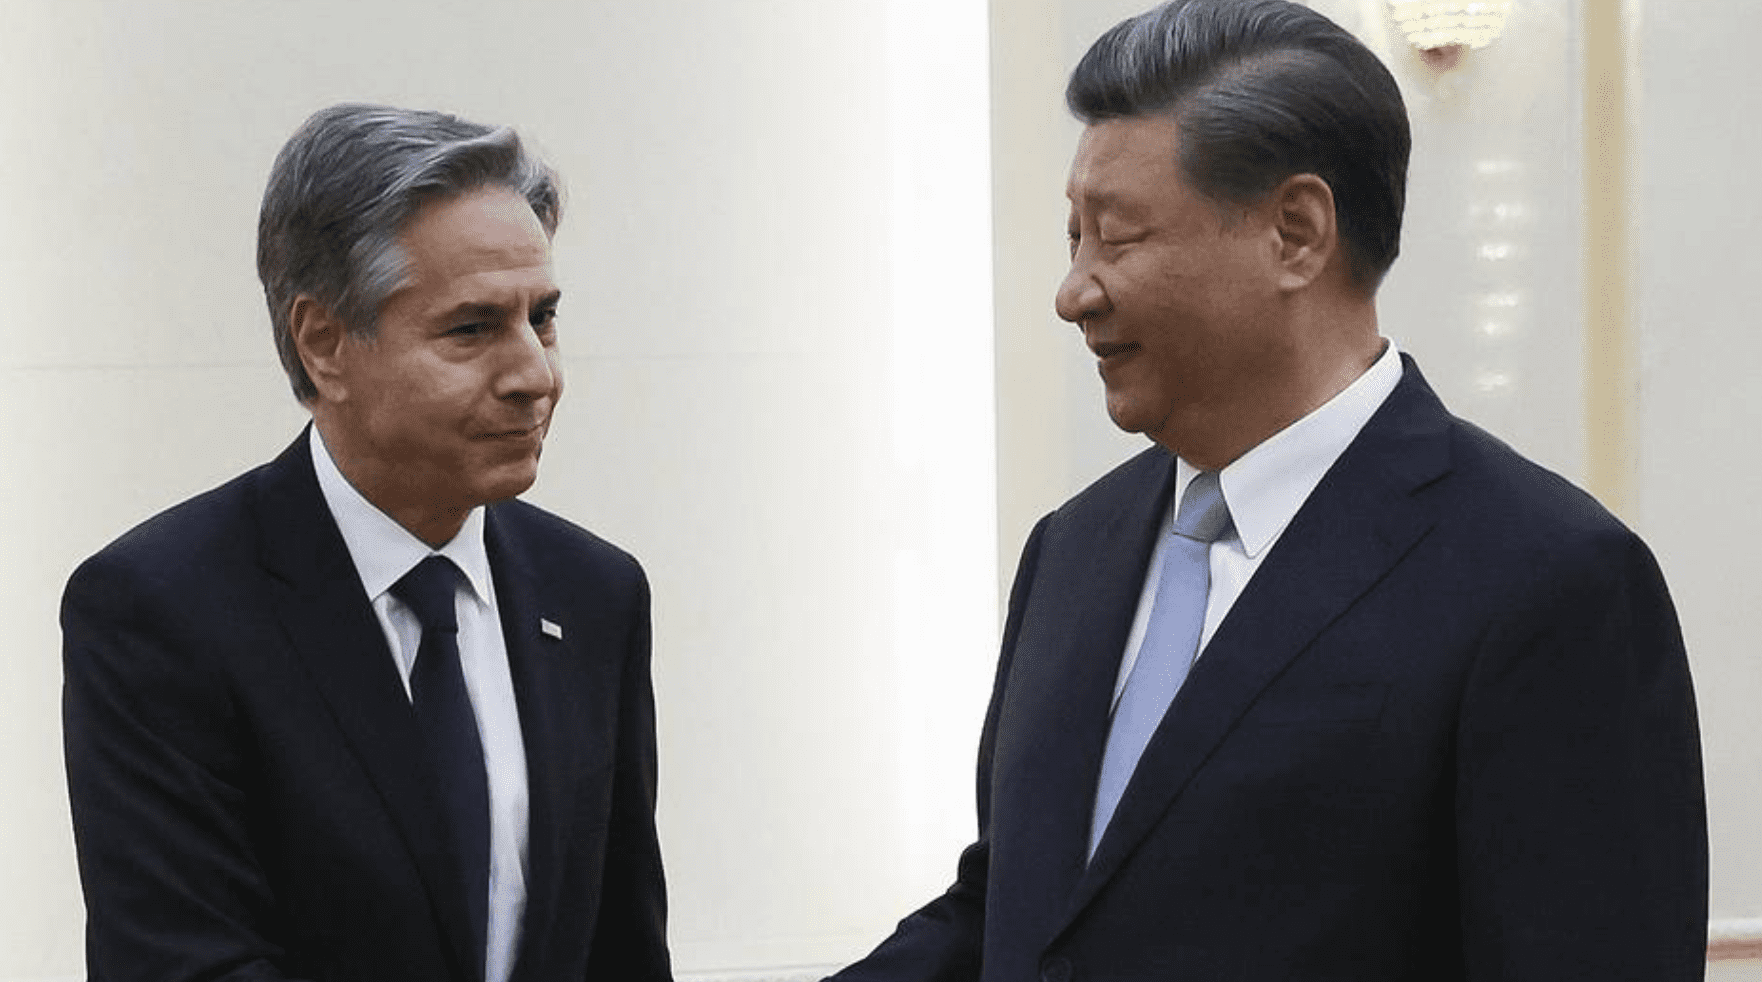 Xi agli Usa: "Collaboriamo sulla base del reciproco rispetto"